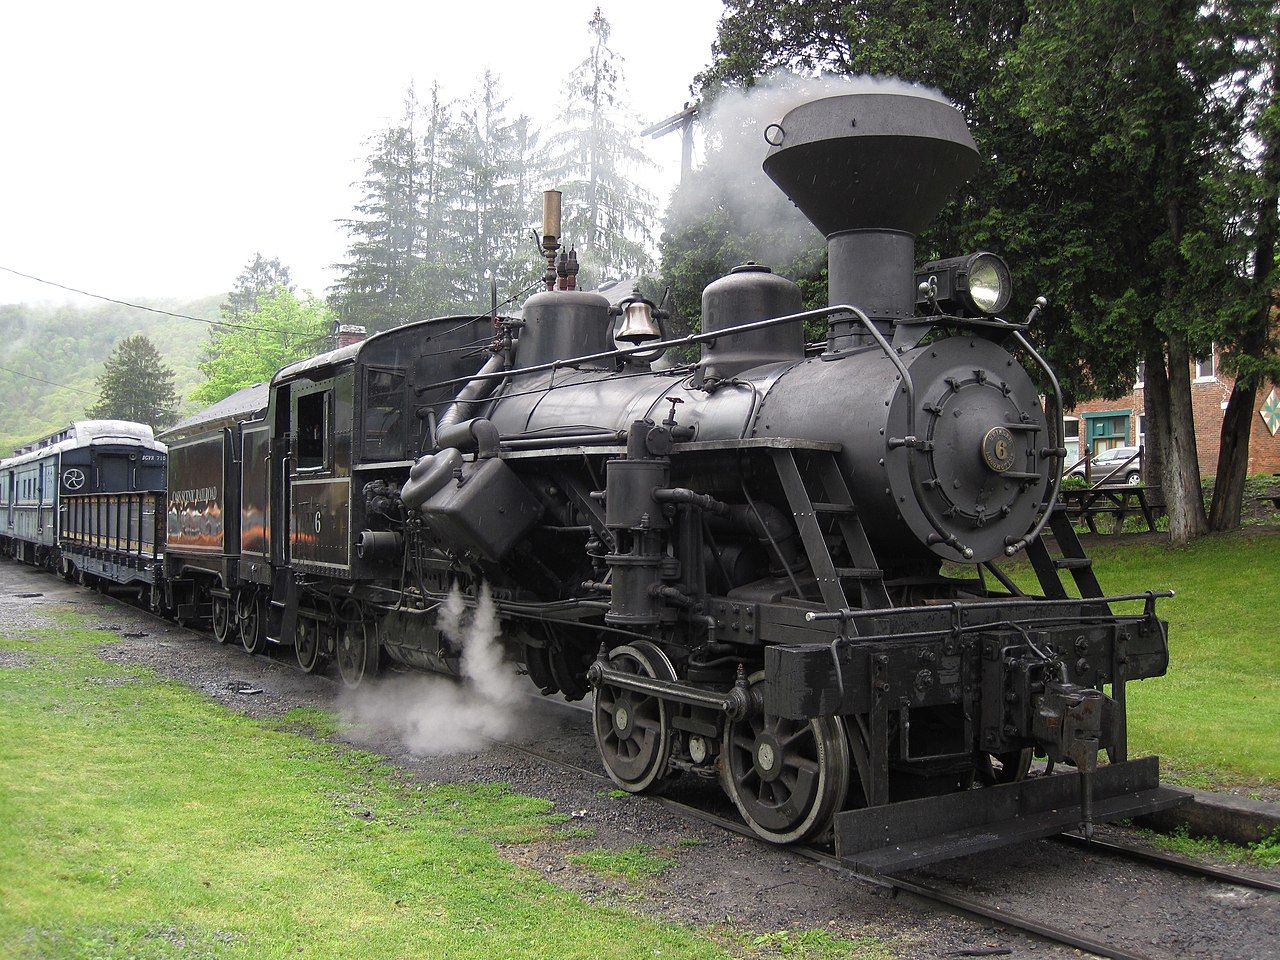 Cass Scenic Railroad - 6 steam locomotive